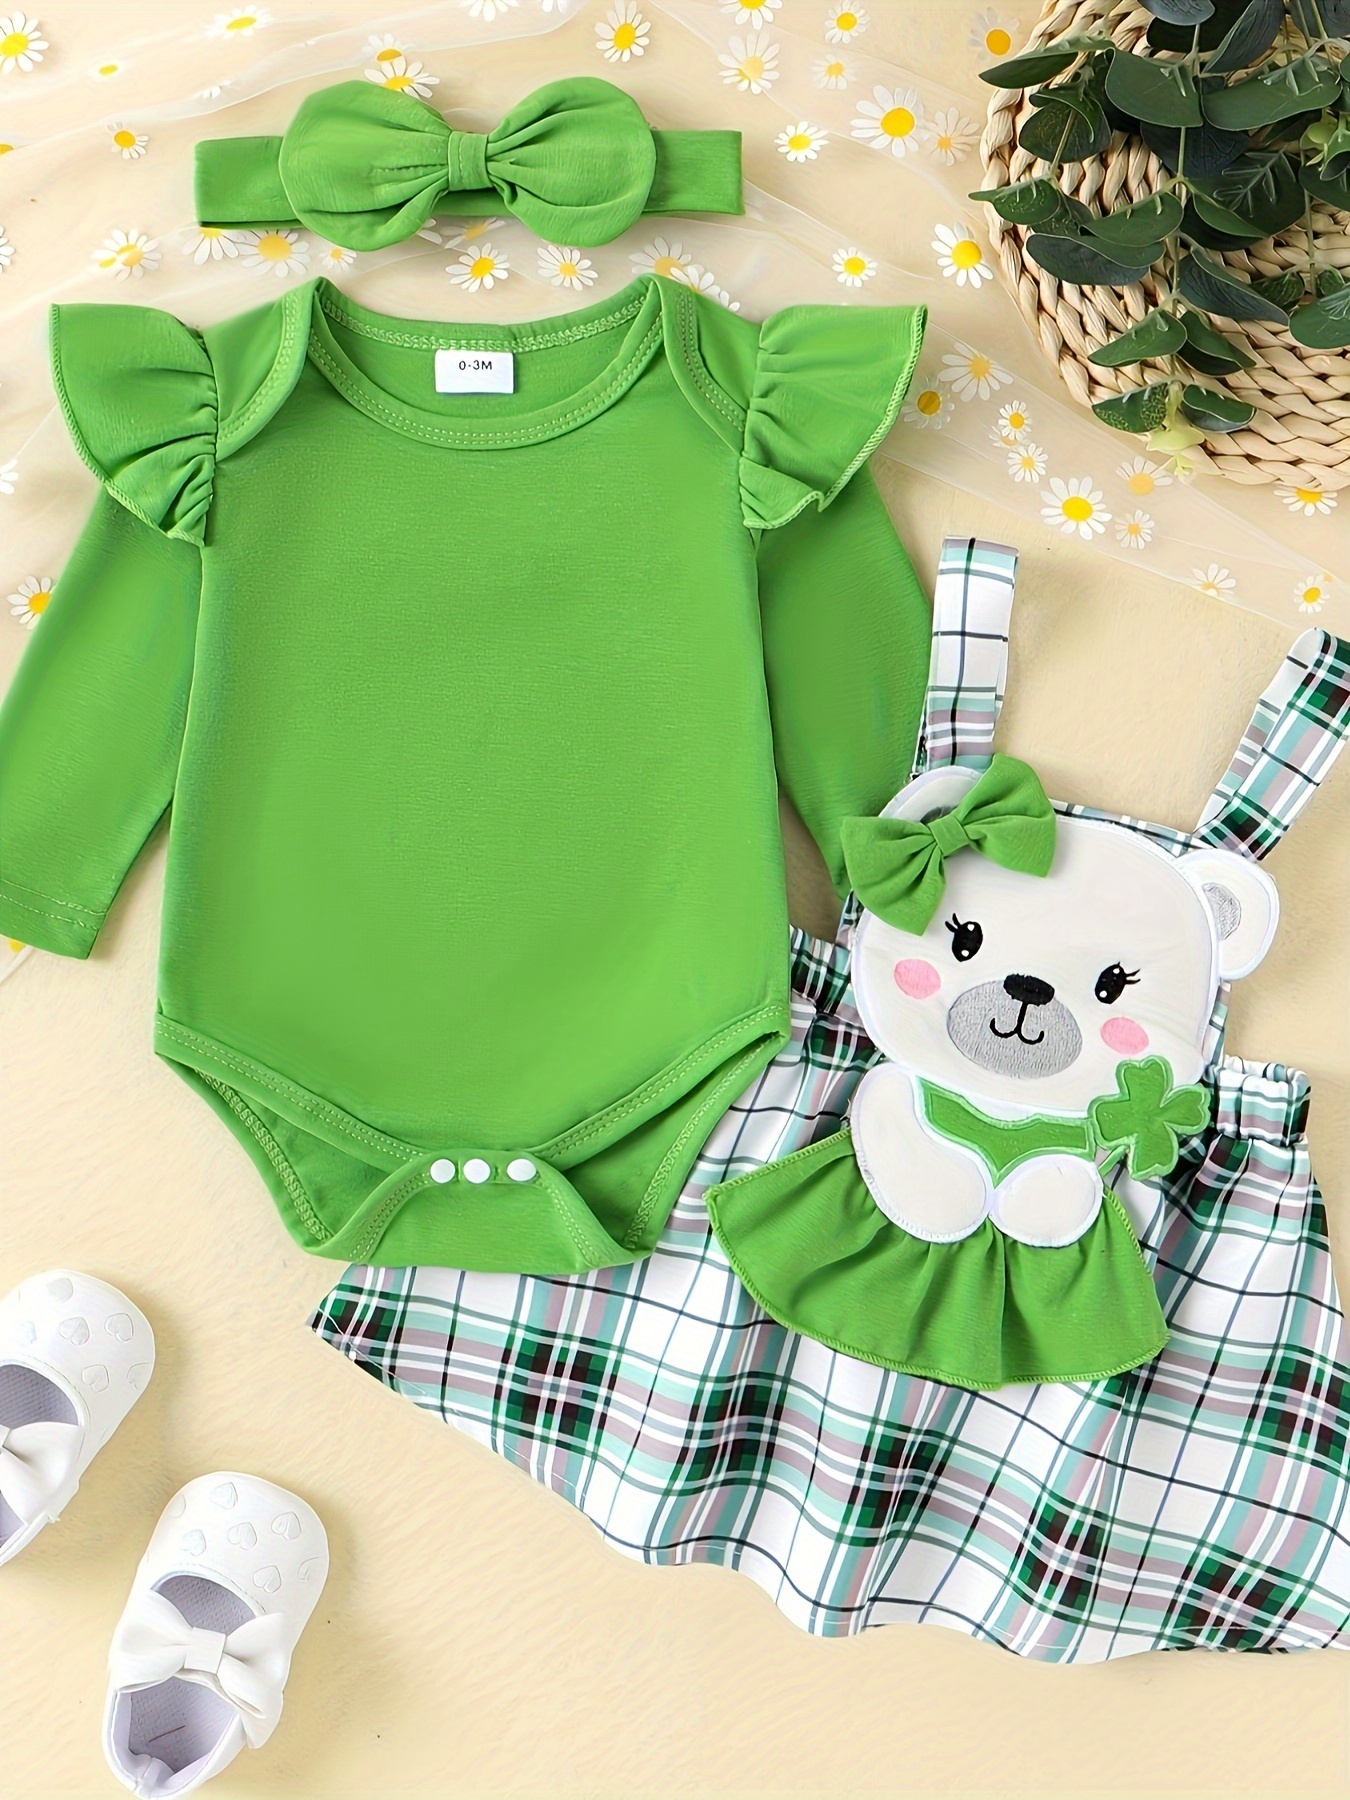 Las mejores ofertas en Handmade 0-3 meses disfraces para bebés y niños